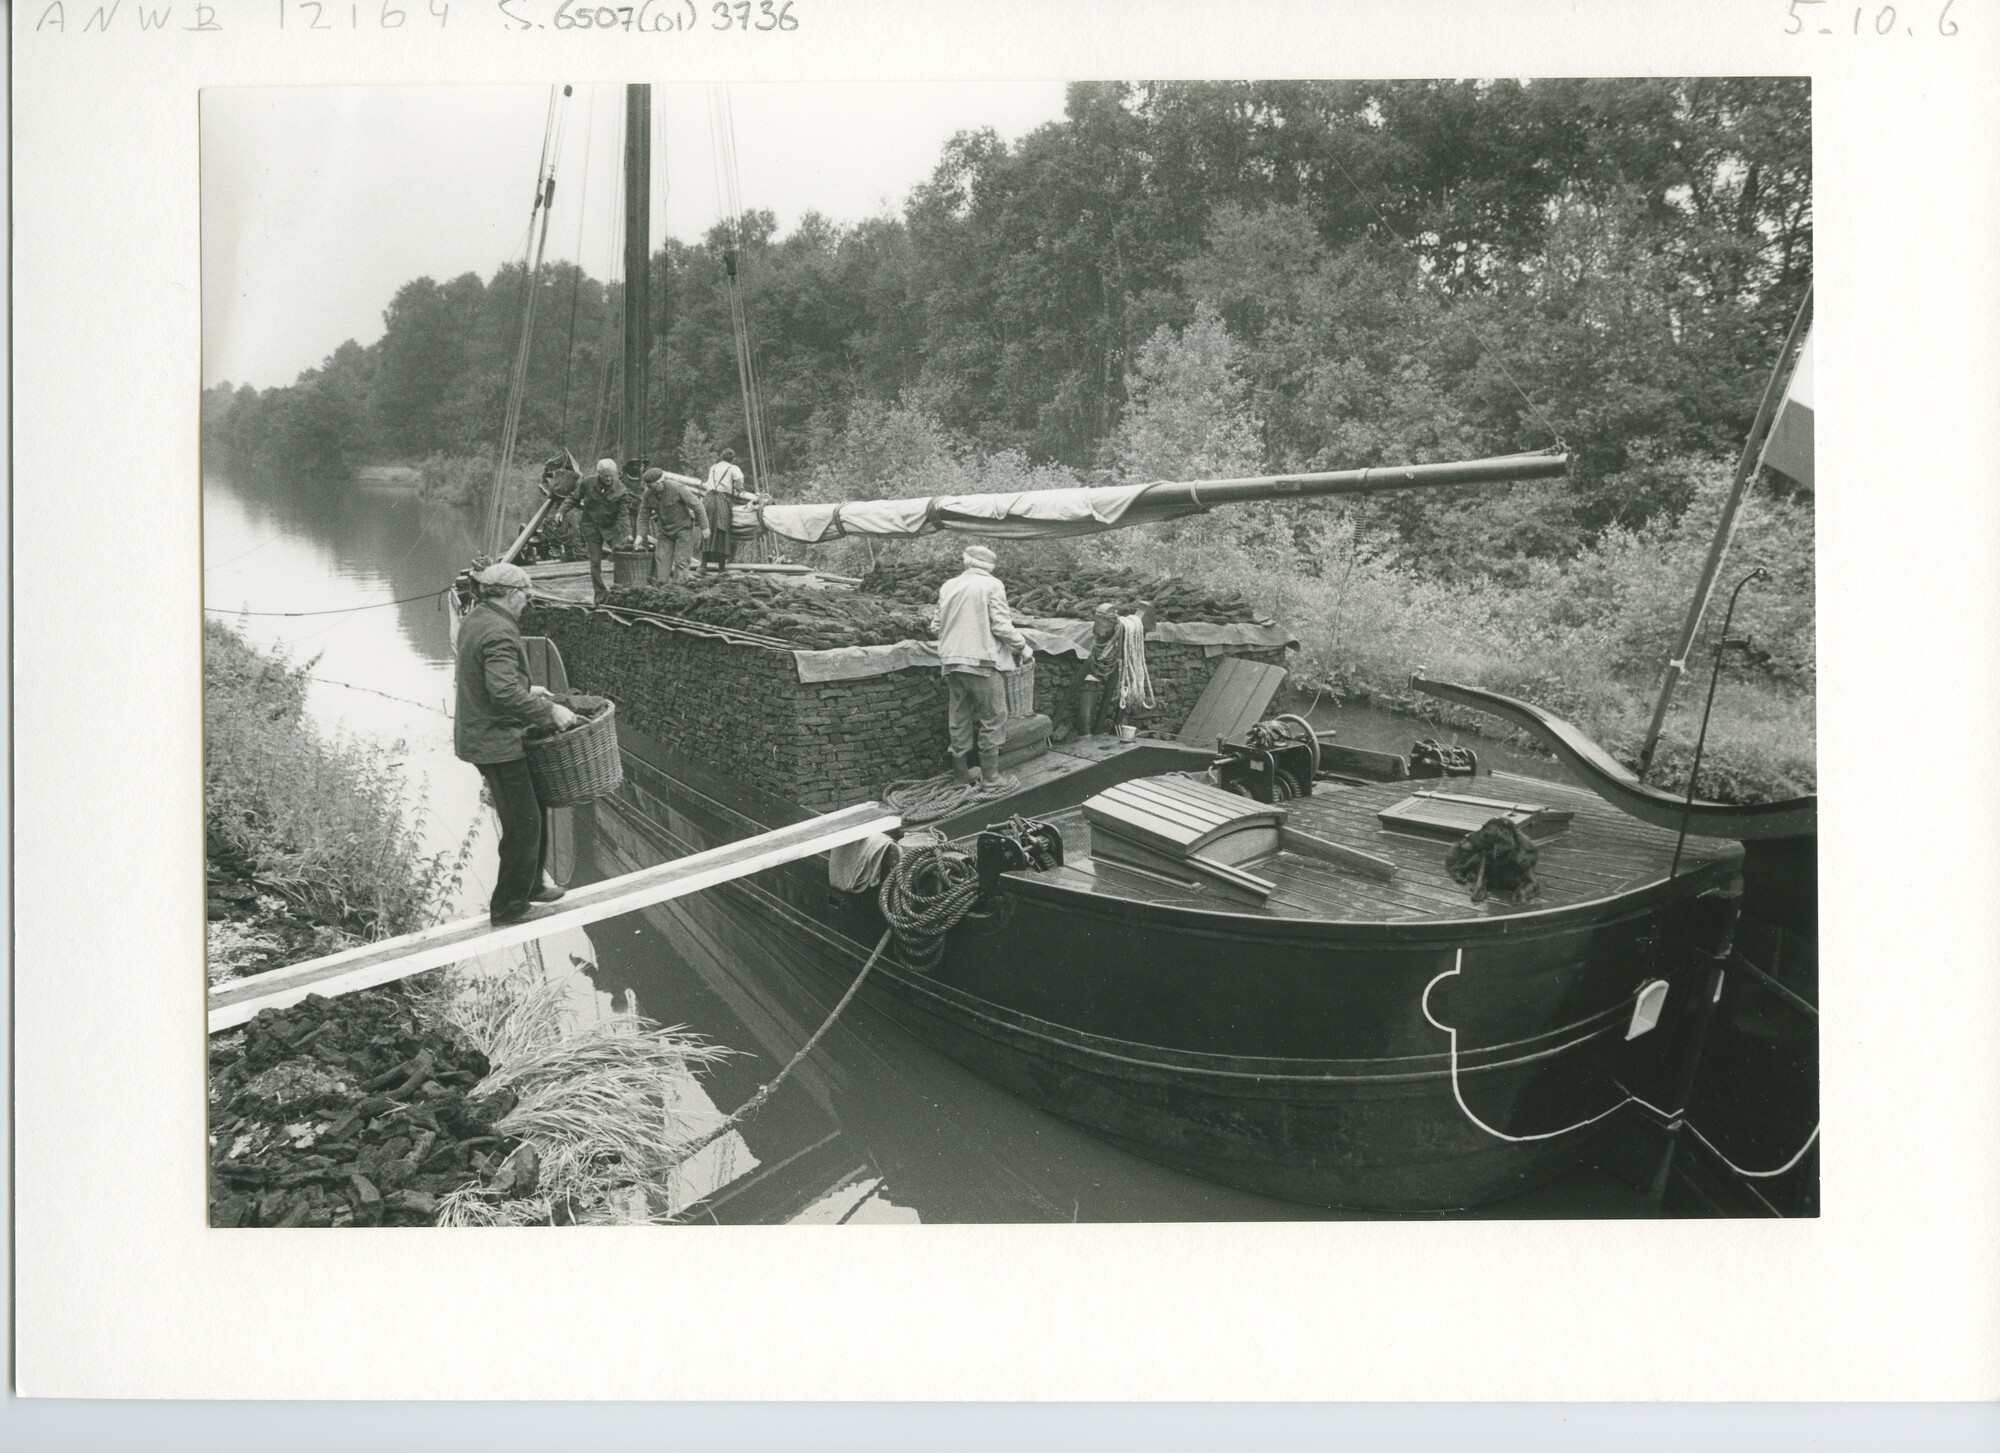 S.6507(01)3736; Het beladen van een turfschip dat in een kanaal ligt afgemeerd door mannen met turfmanden; foto